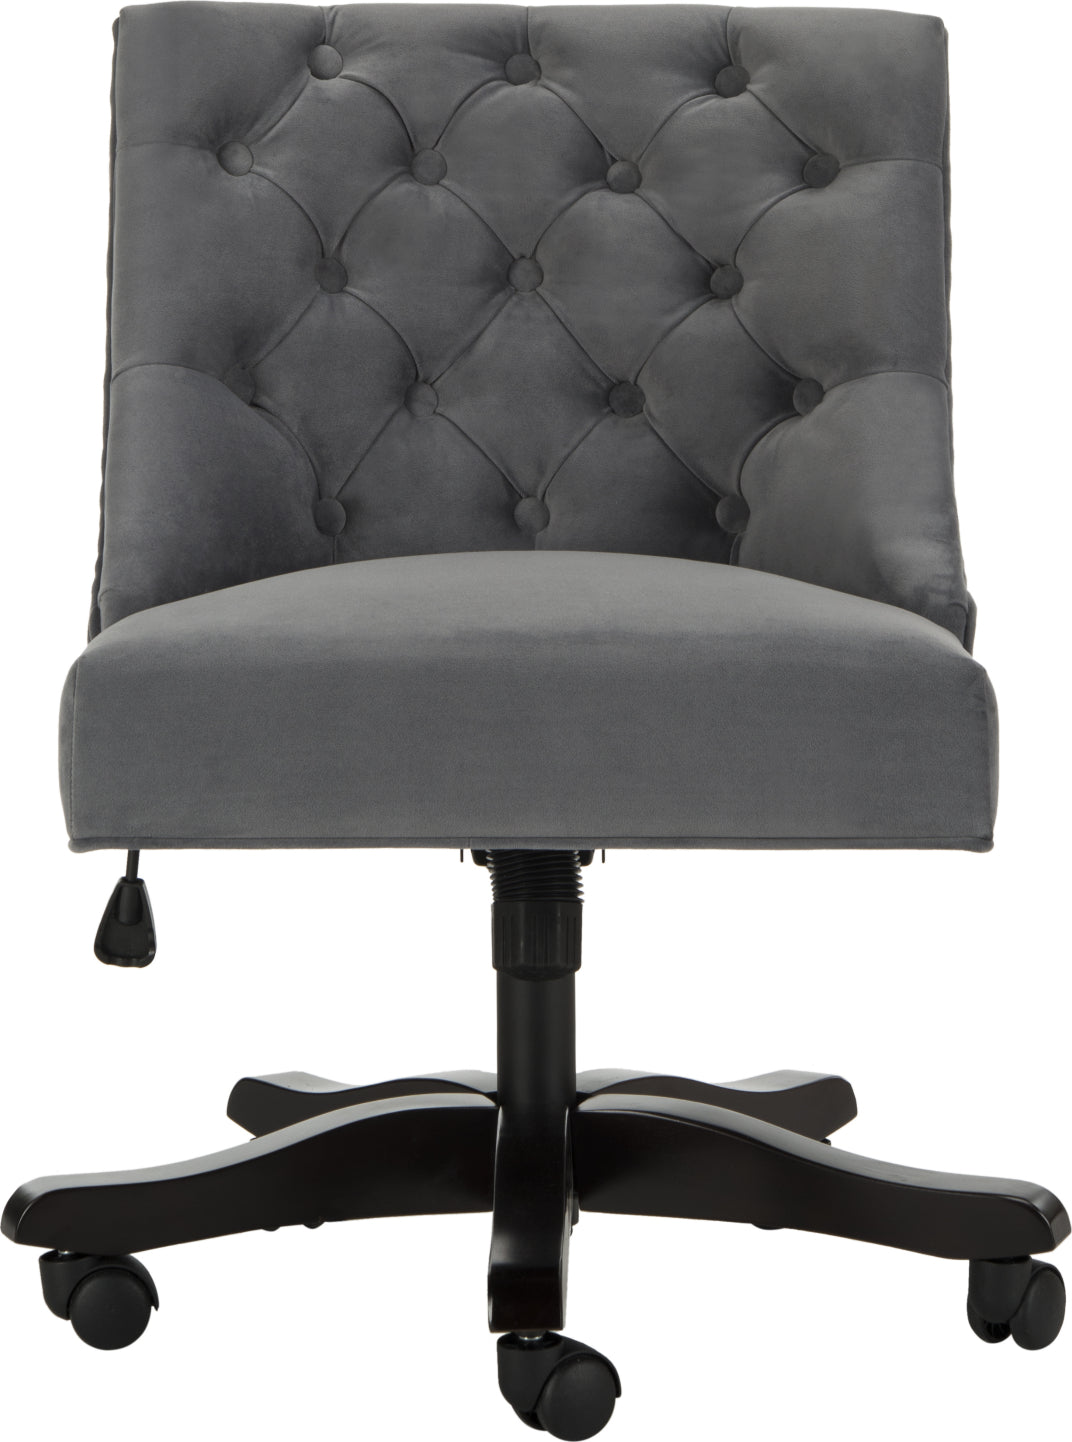 Safavieh Soho Tufted Velvet Swivel Desk Chair Grey Furniture main image